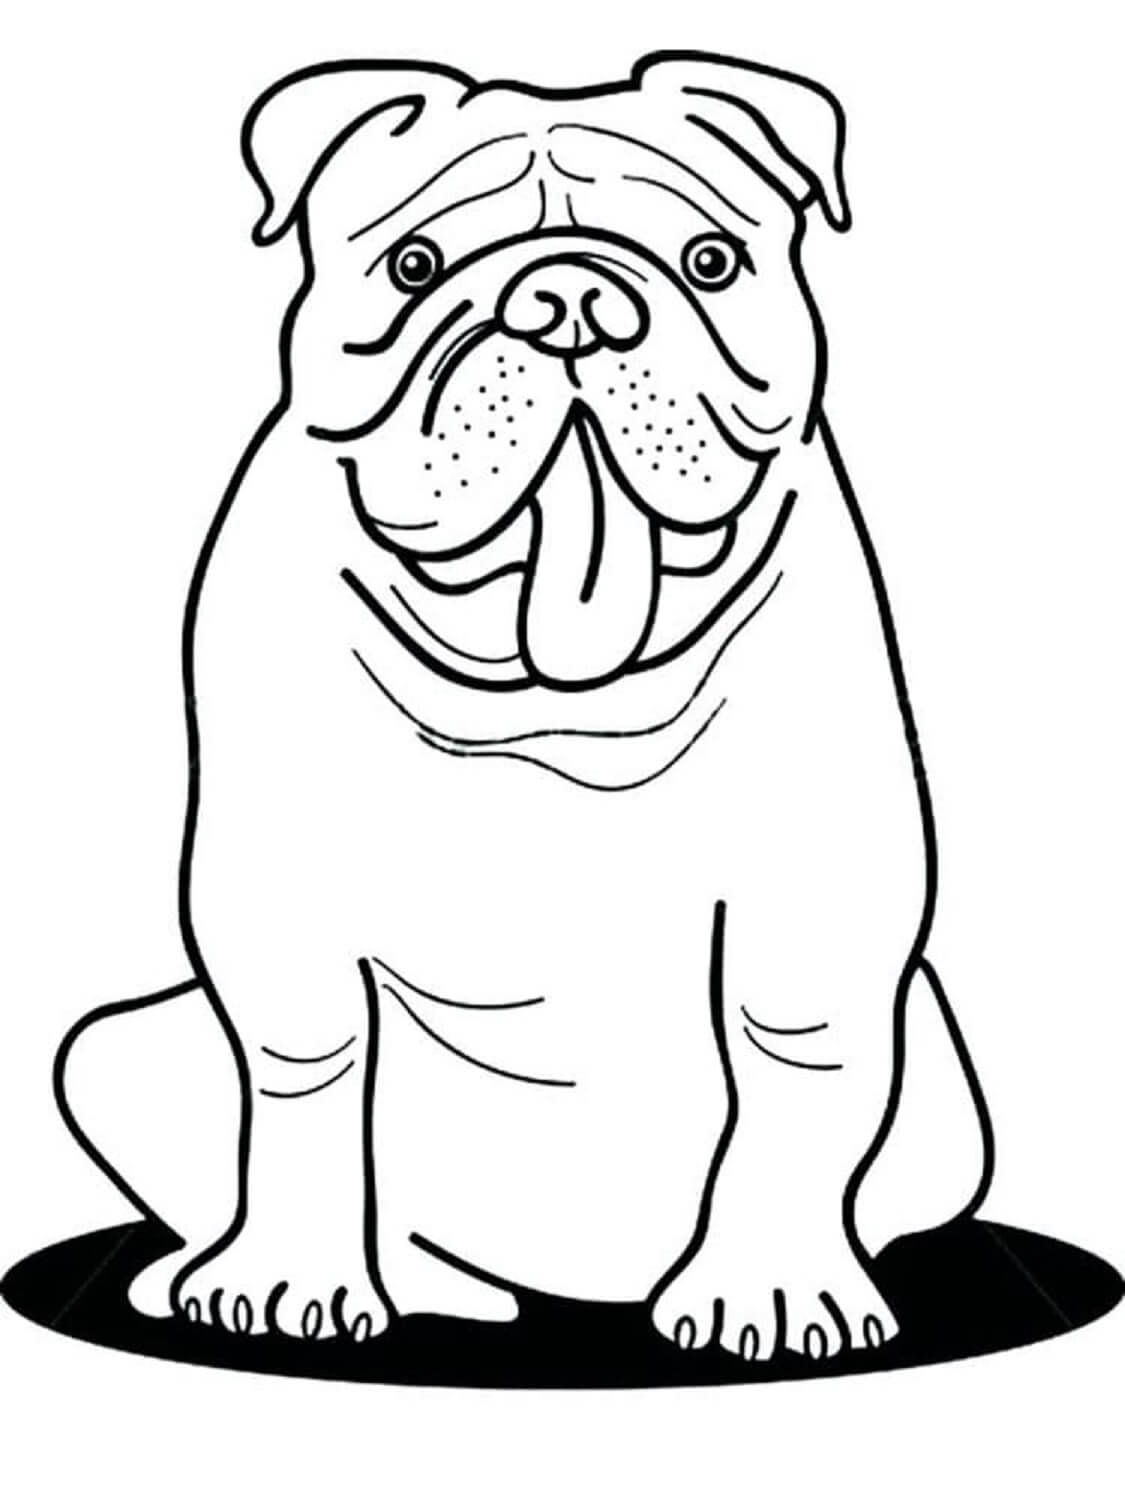 Bulldog Sentado para colorir